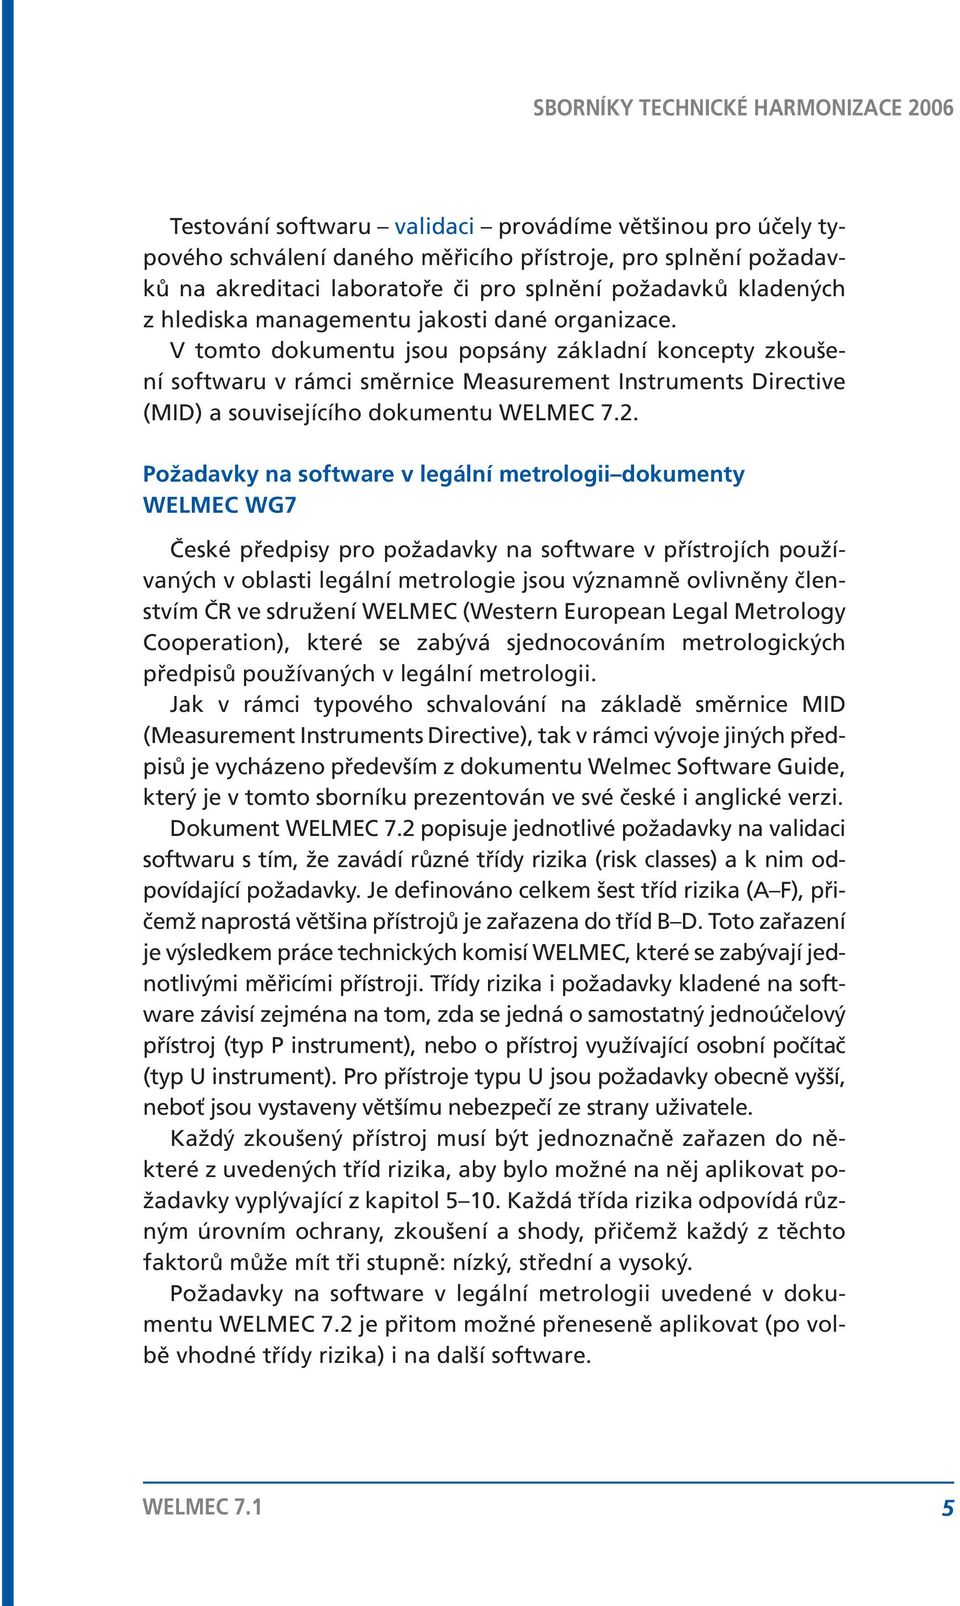 Požadavky na software v legální metrologii dokumenty WELMEC WG7 České předpisy pro požadavky na software v přístrojích používaných v oblasti legální metrologie jsou významně ovlivněny členstvím ČR ve